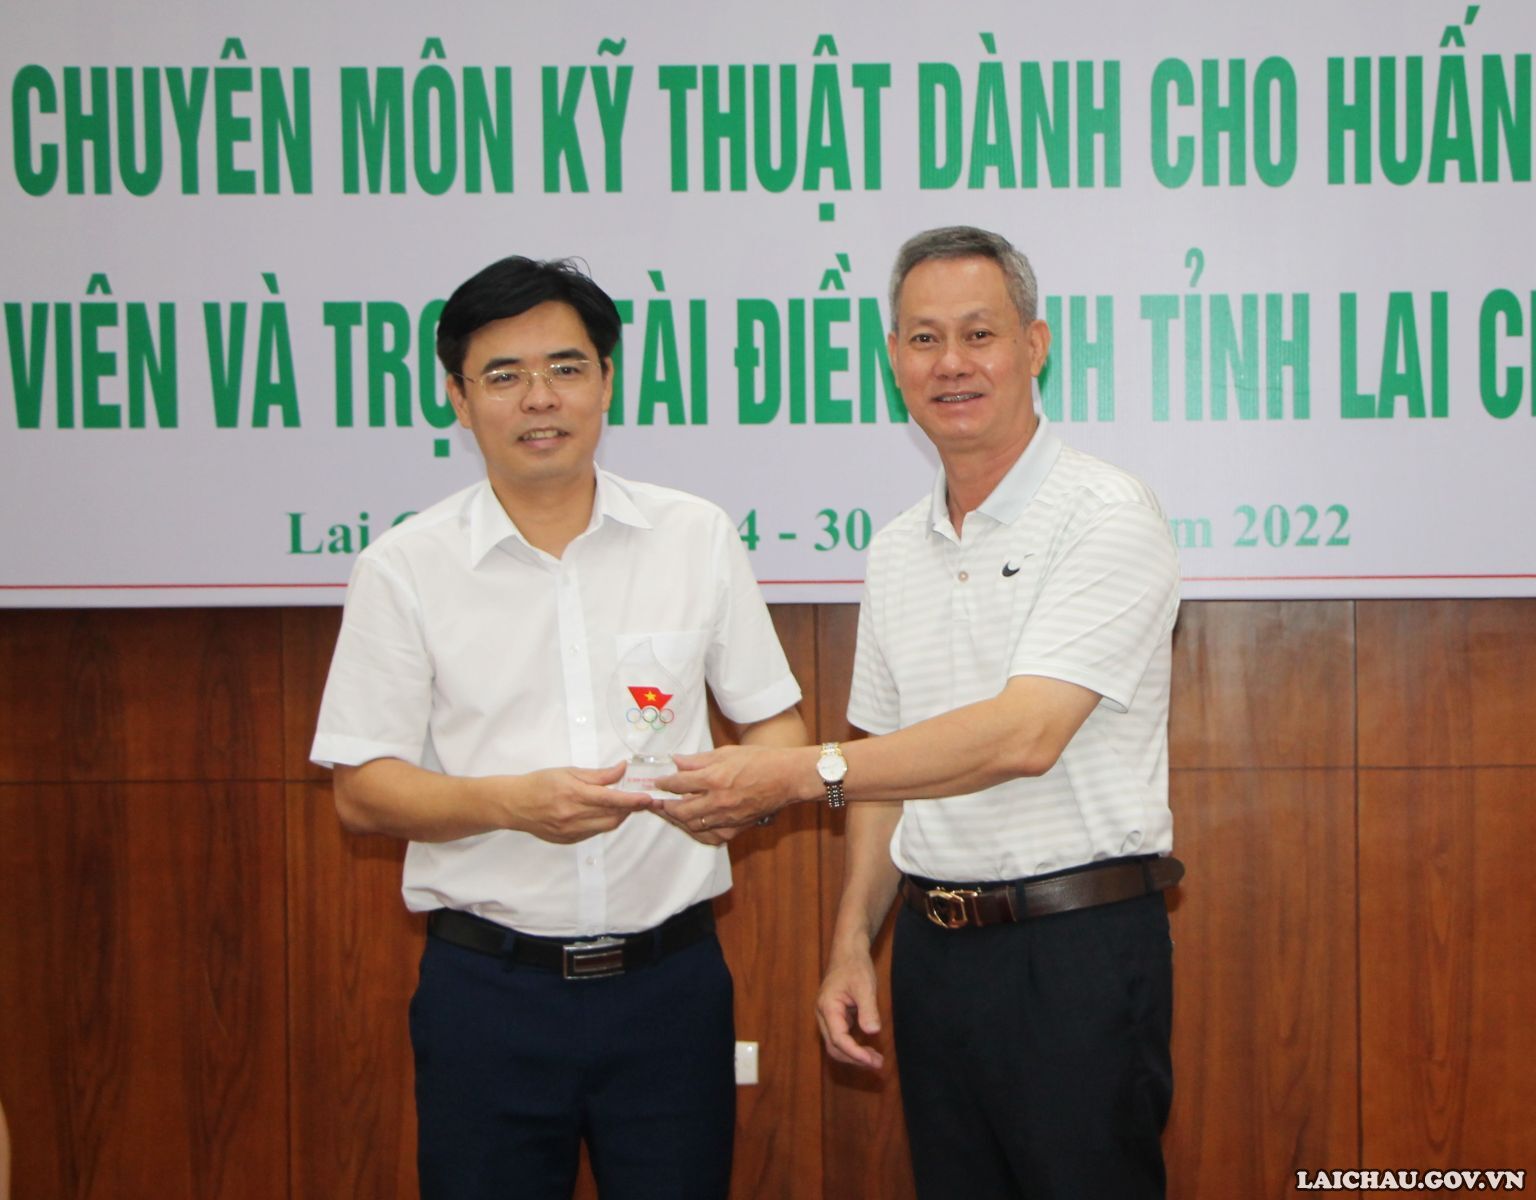 Khóa học chuyên môn kỹ thuật dành cho huấn luyện viên, hướng dẫn viên và trọng tài điền kinh tỉnh Lai Châu năm 2022 - Ảnh 3.